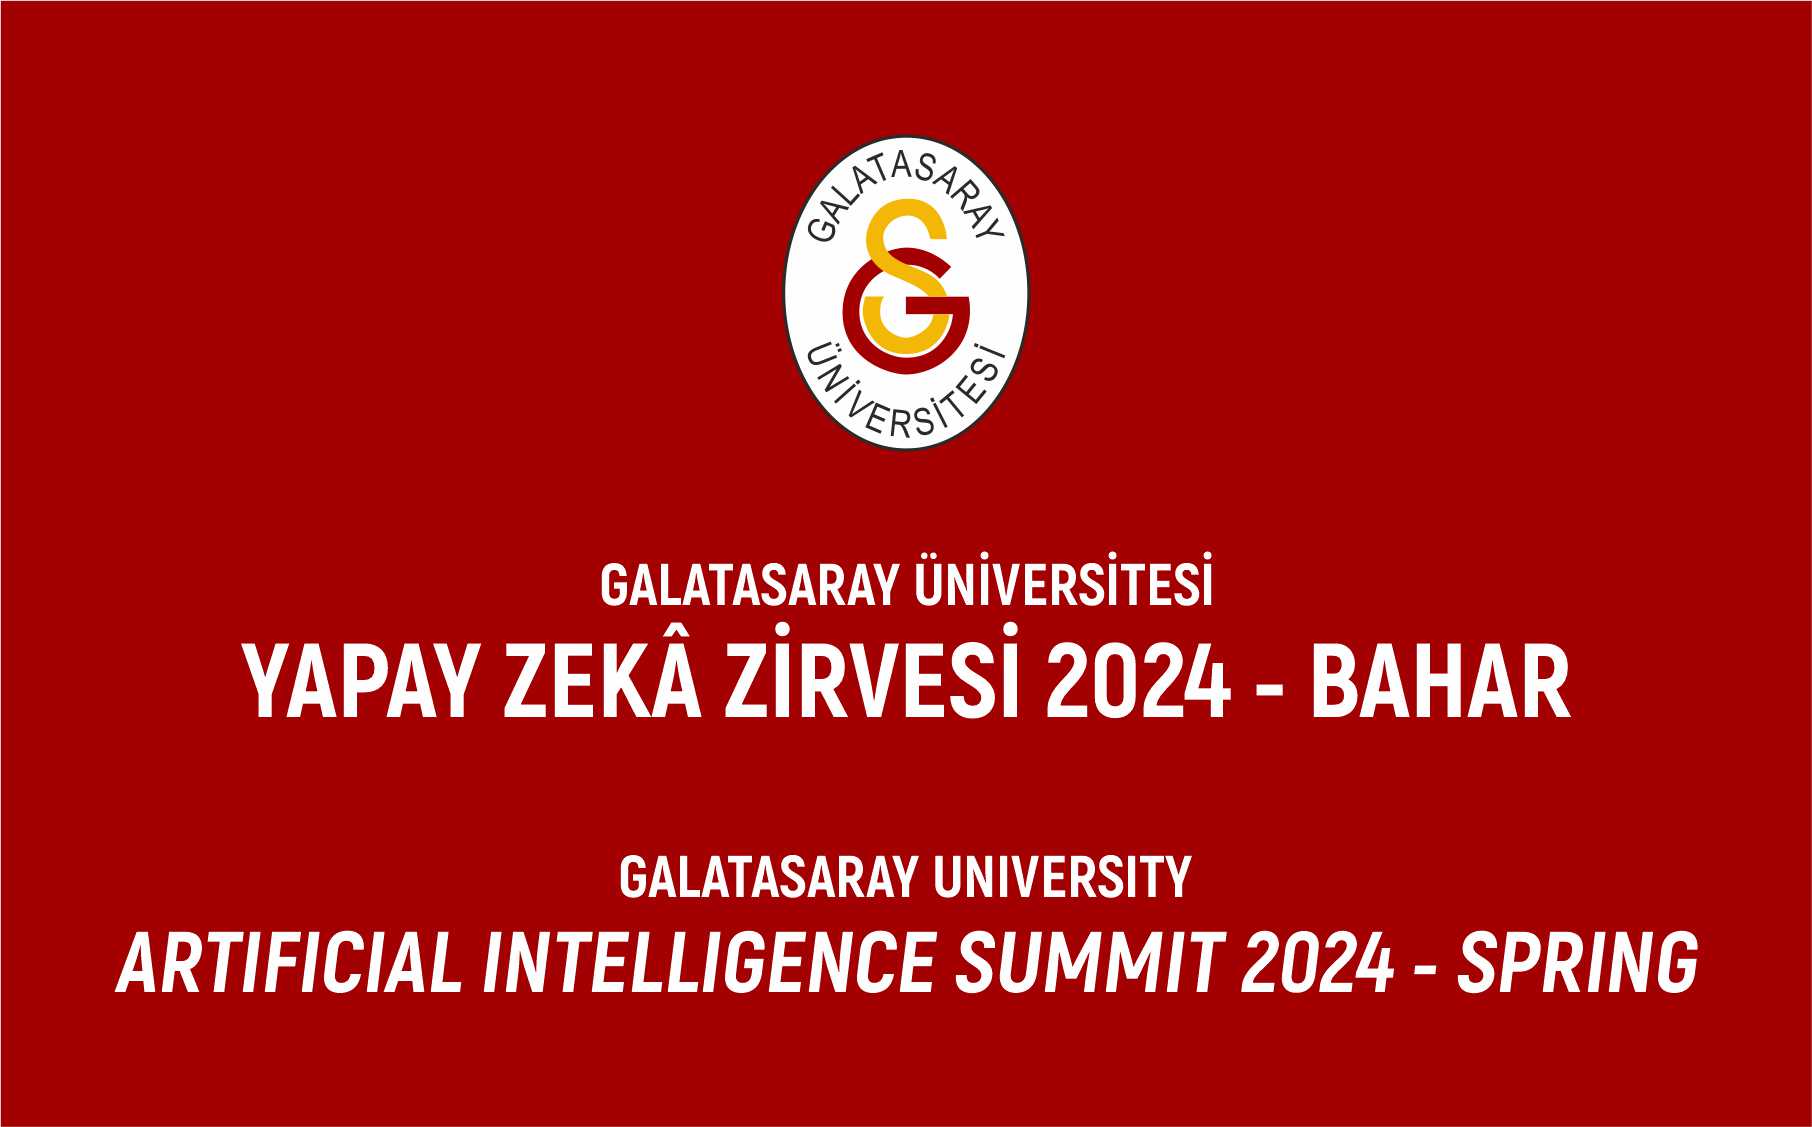 Yapay Zekâ Zirvesi 2024 - Bahar (Artificial Intelligence Summit - 2024 Spring) etkinlik görseli